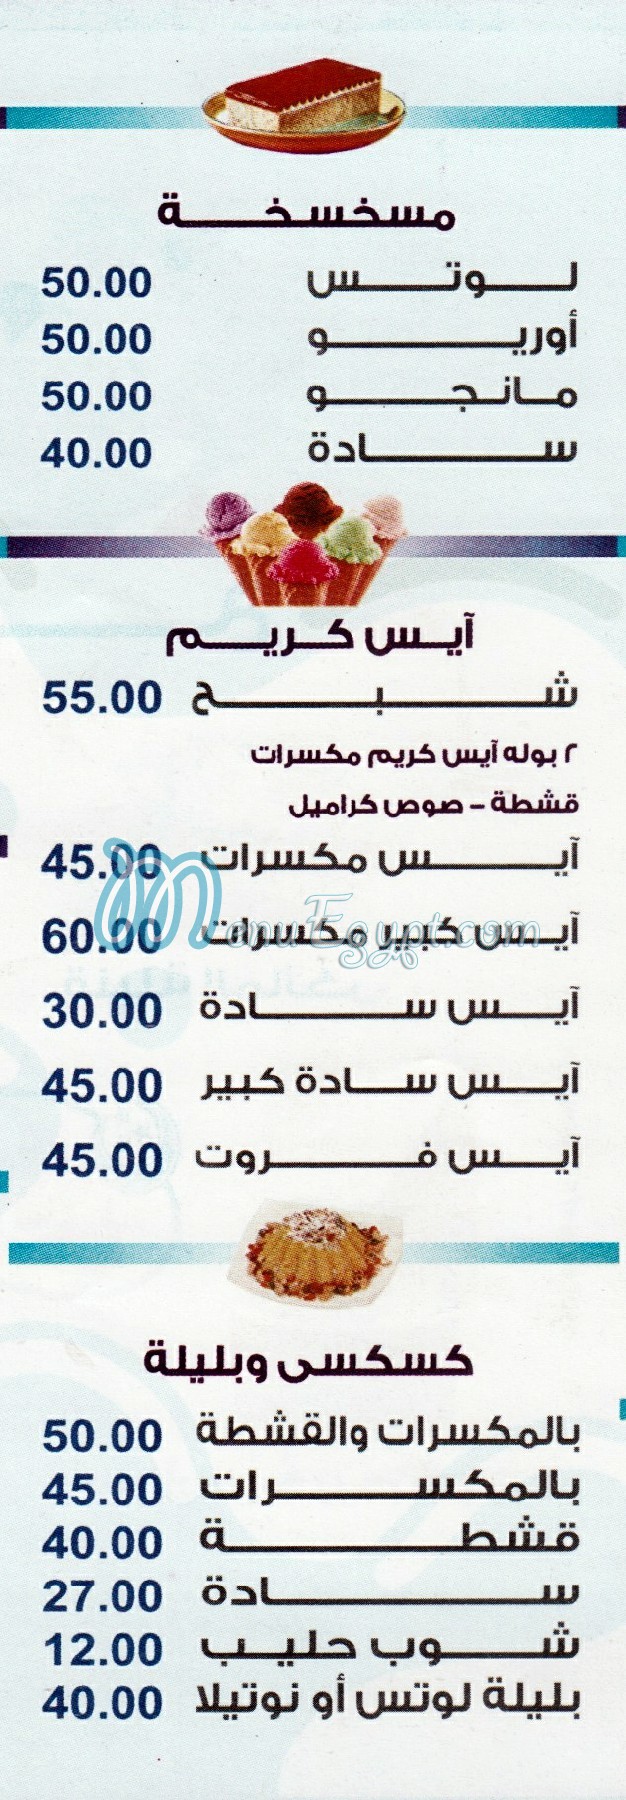 El Malky menu Egypt